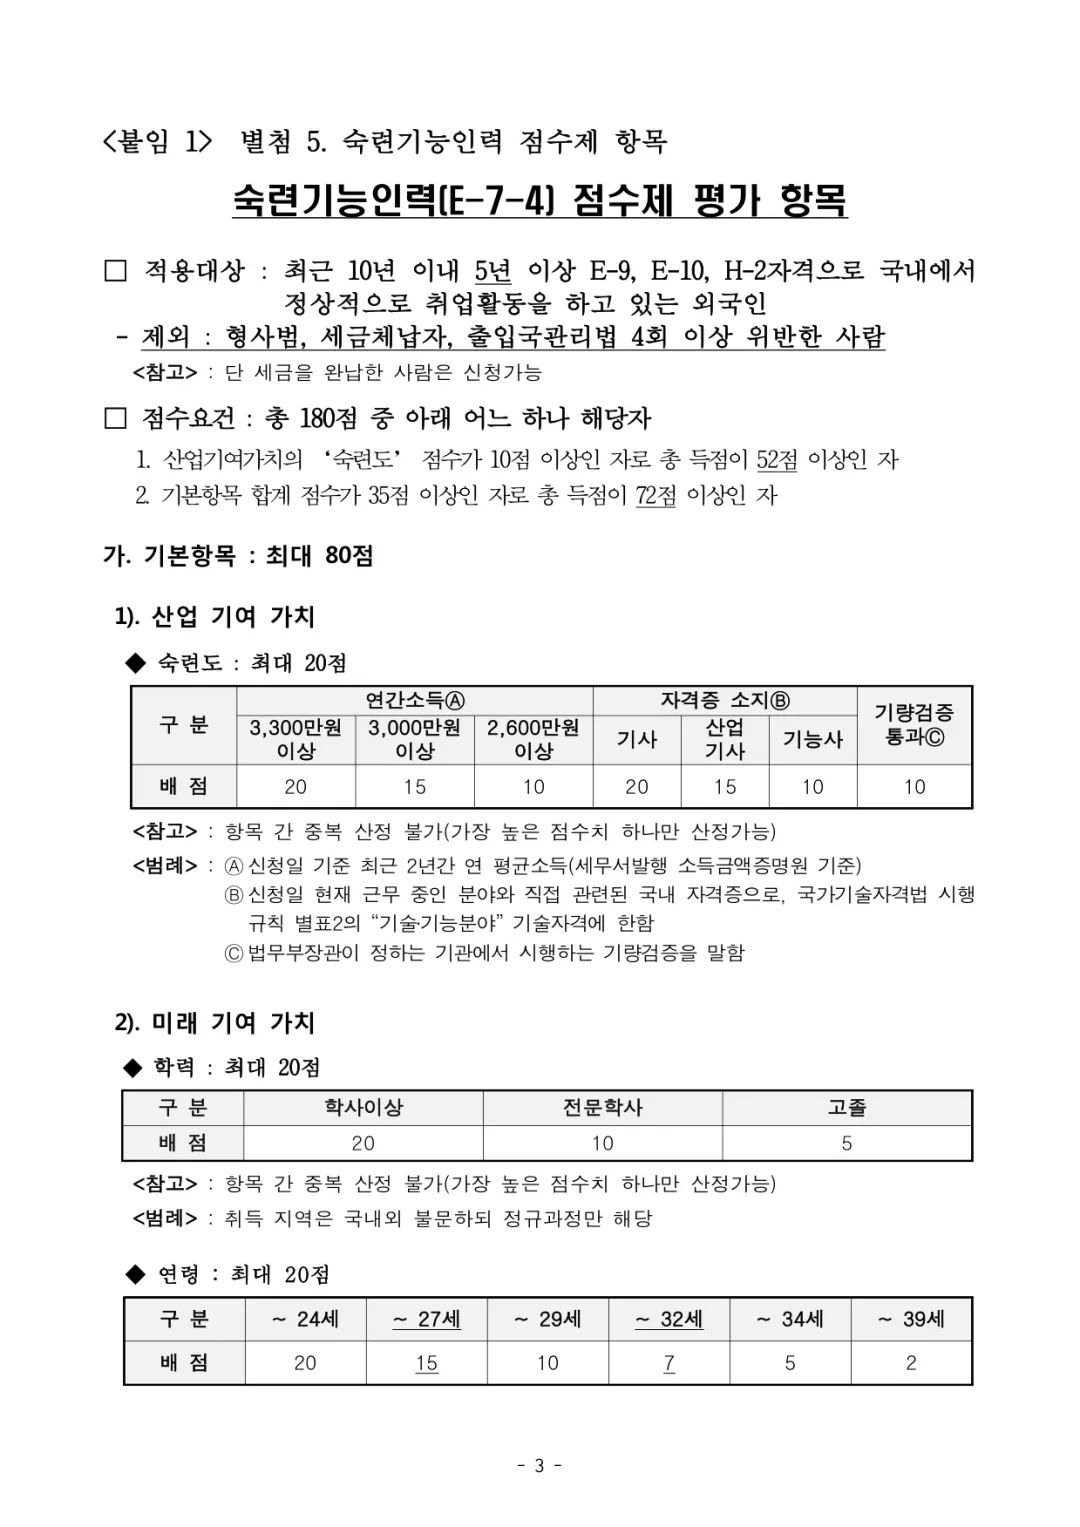 韩国长期签证选拔标准变更(E-7-4)